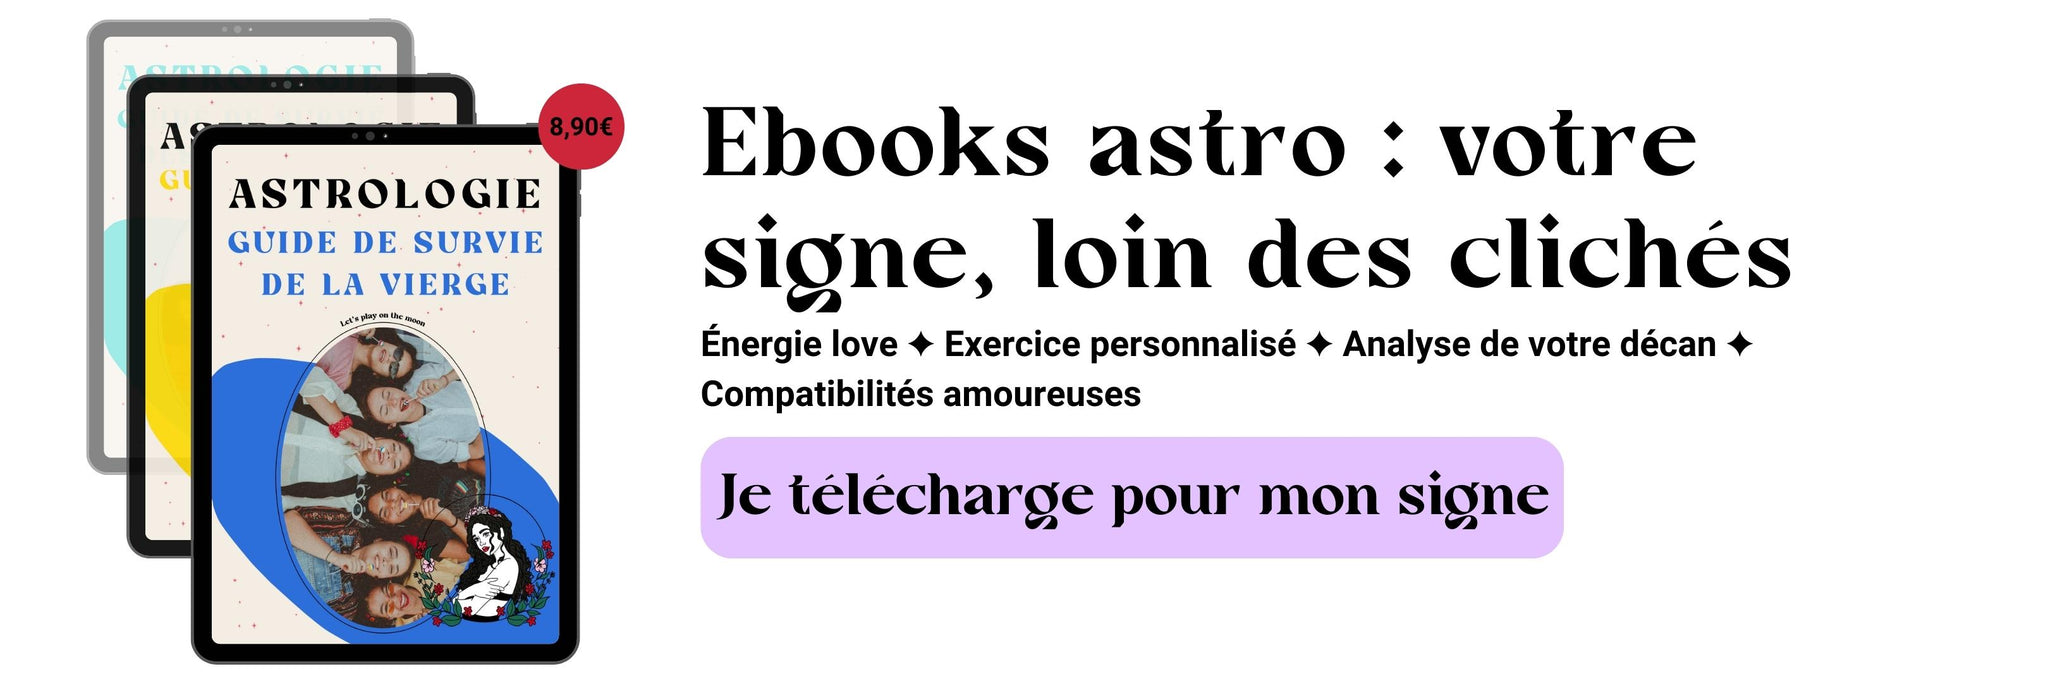 Découvrez l'énergie de votre signe avec l'ebook astro !